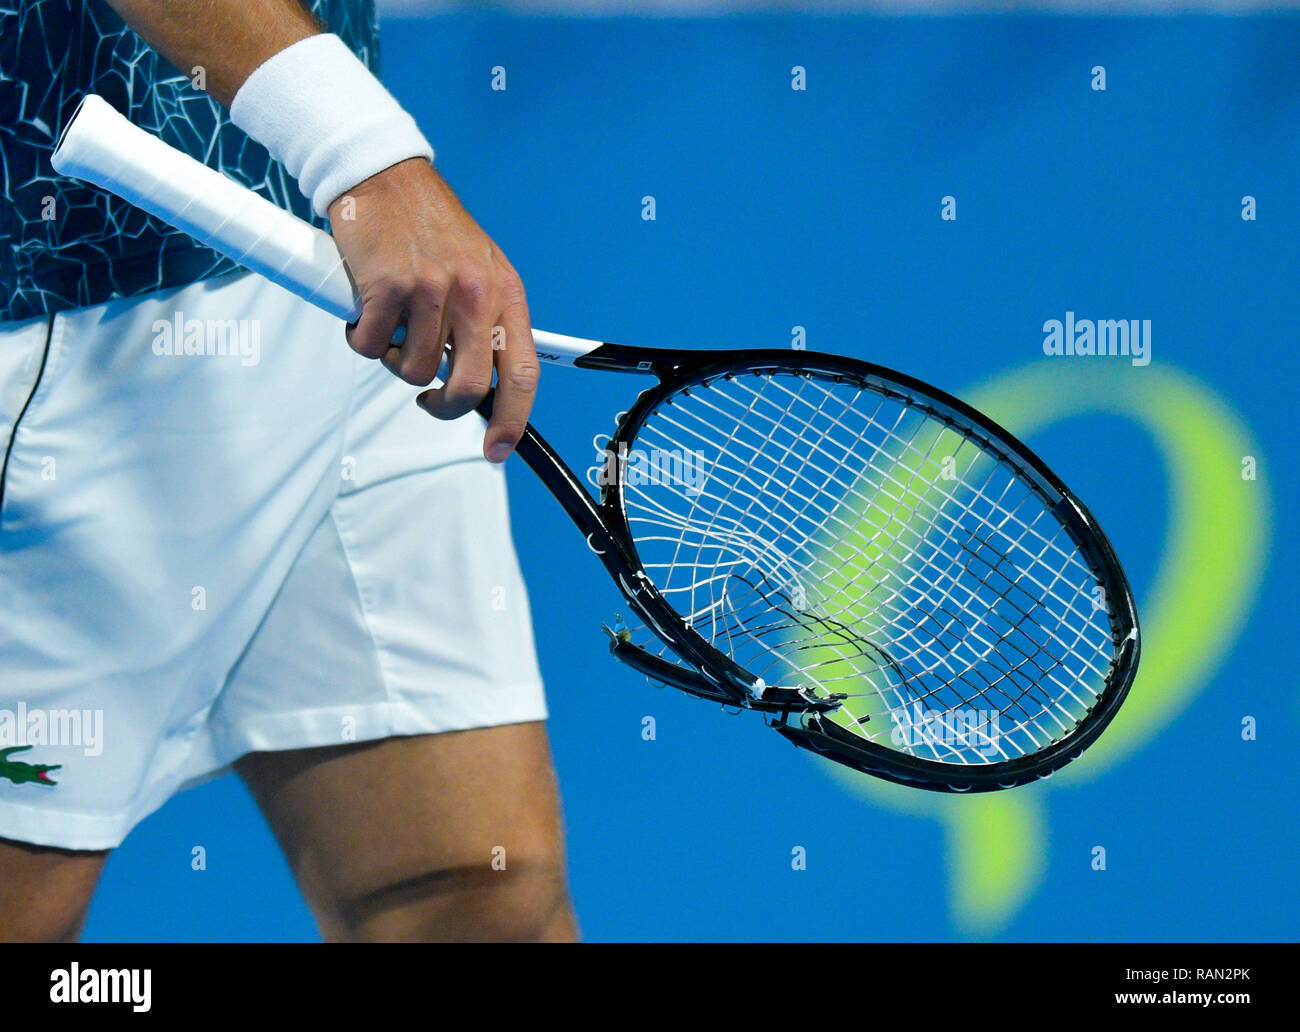 Racchetta da tennis rotta immagini e fotografie stock ad alta risoluzione -  Alamy